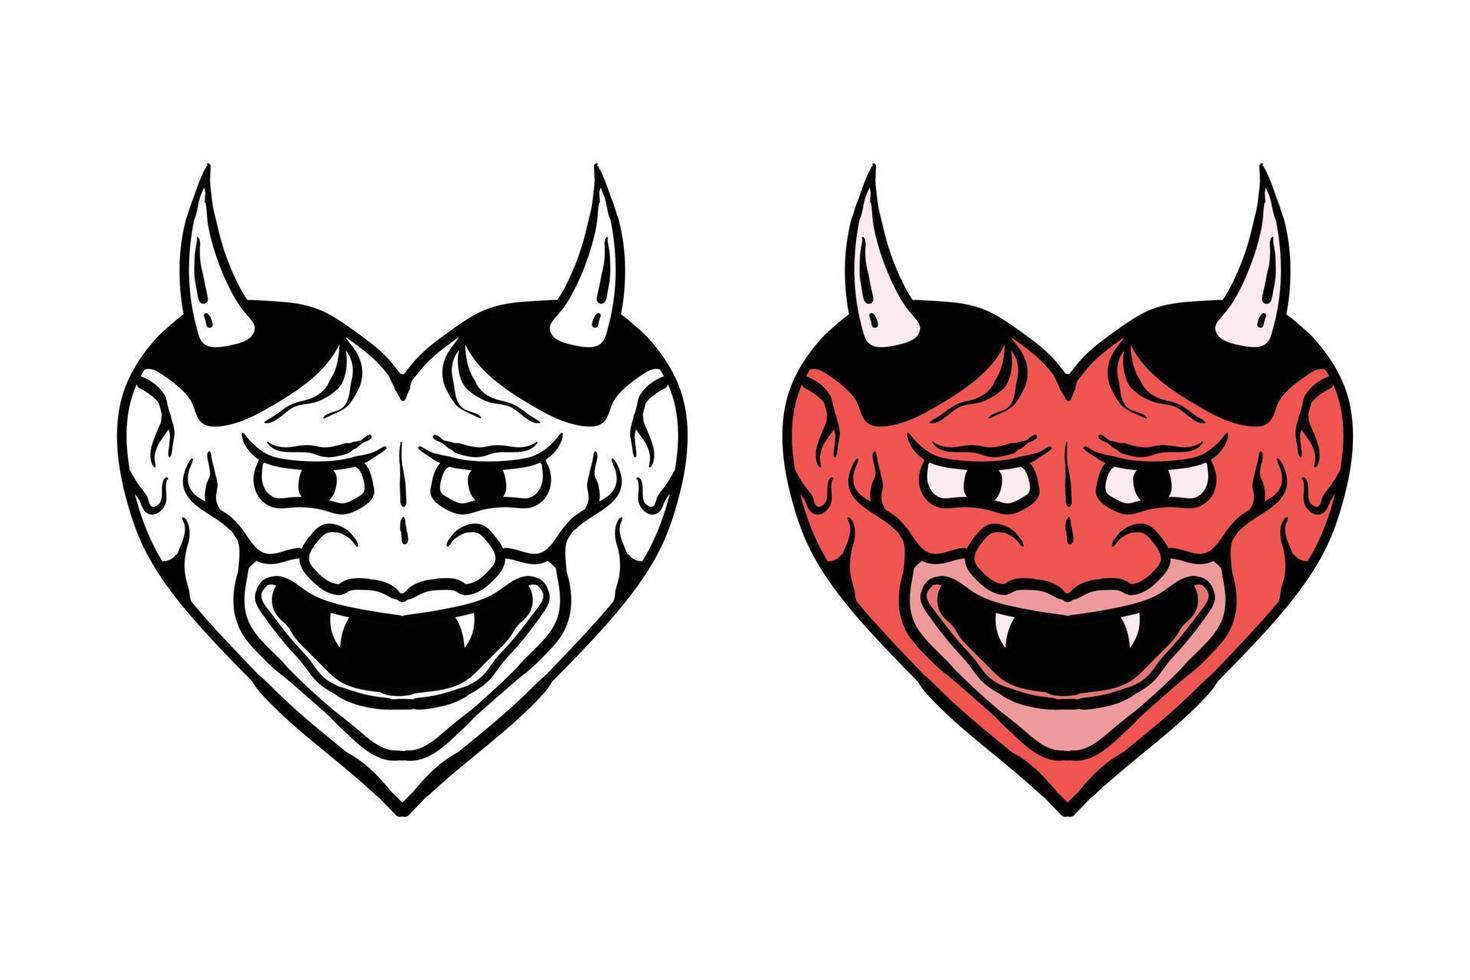 ilustração do demônio do amor estampada em camisetas, jaquetas, lembranças ou tatuagem vetor